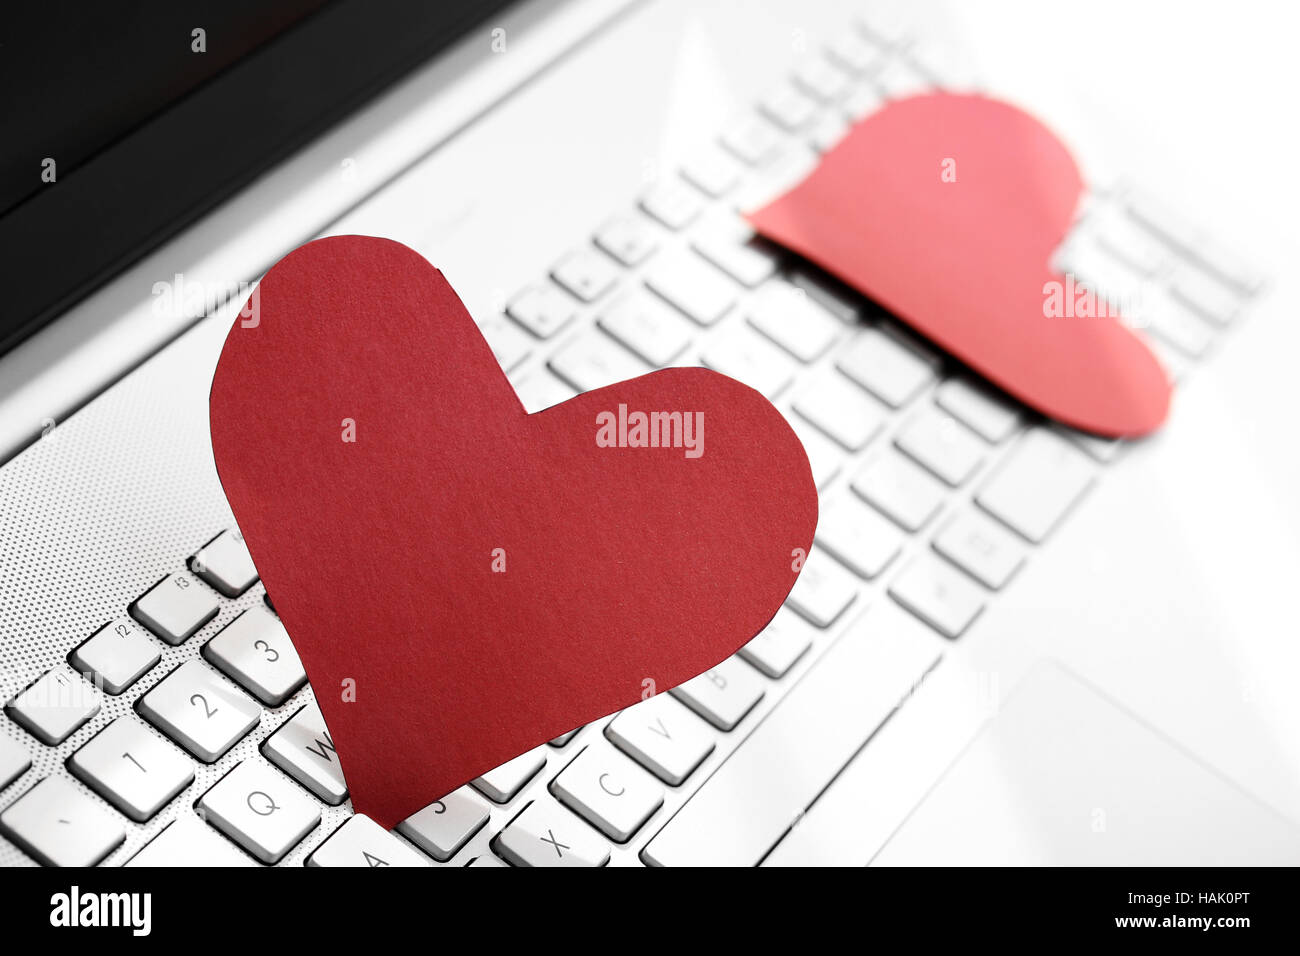 Internet Dating concetto - due cuori di carta sulla tastiera del computer Foto Stock